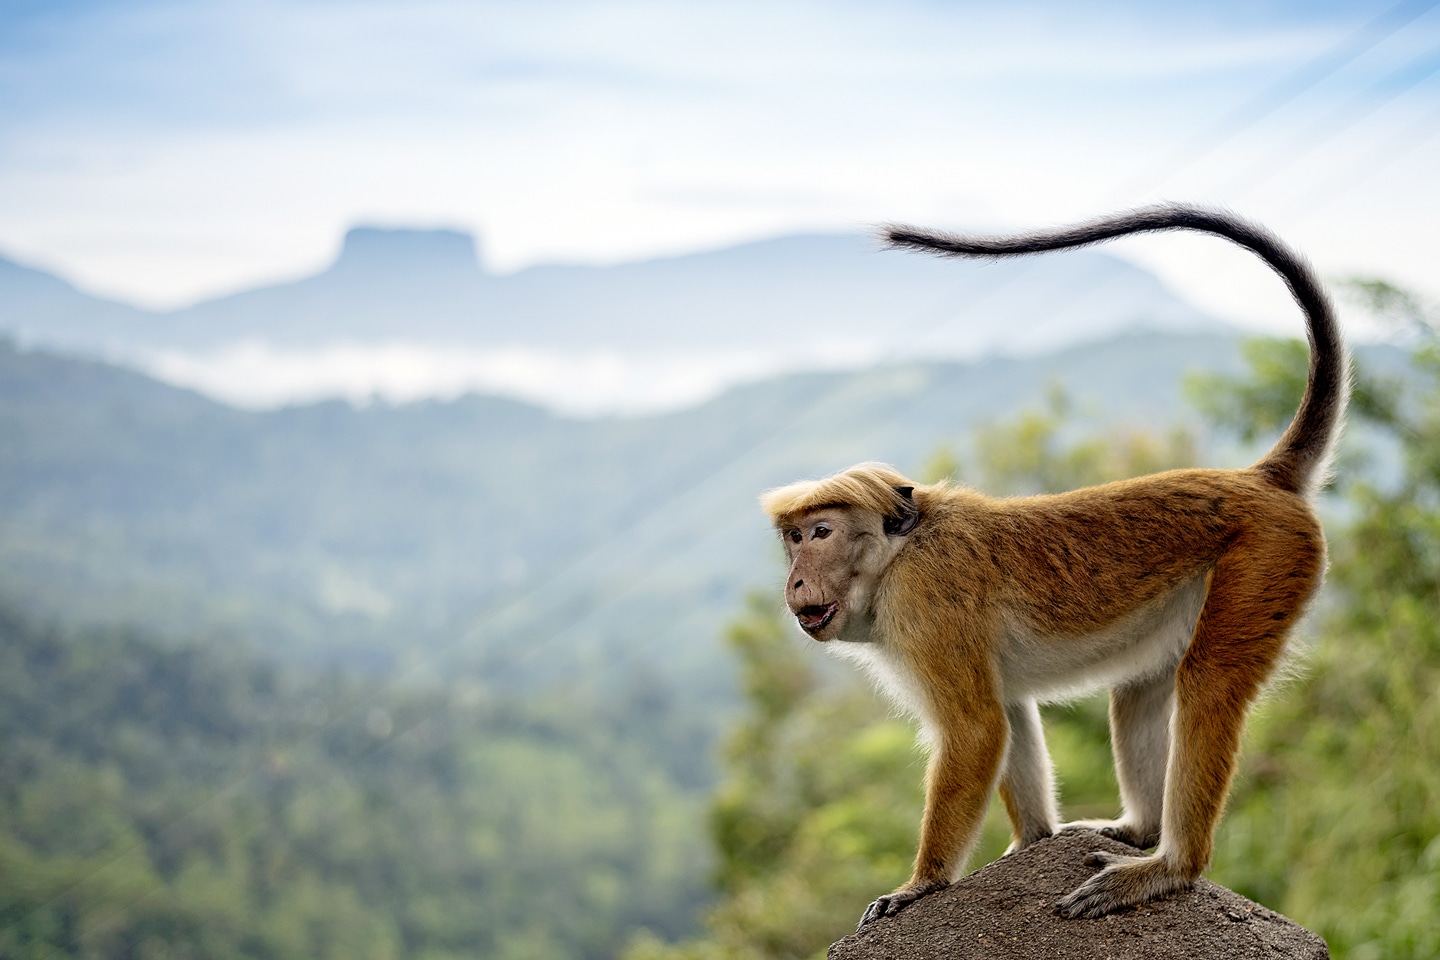 Monkey stood on a rock in Sri Lanka